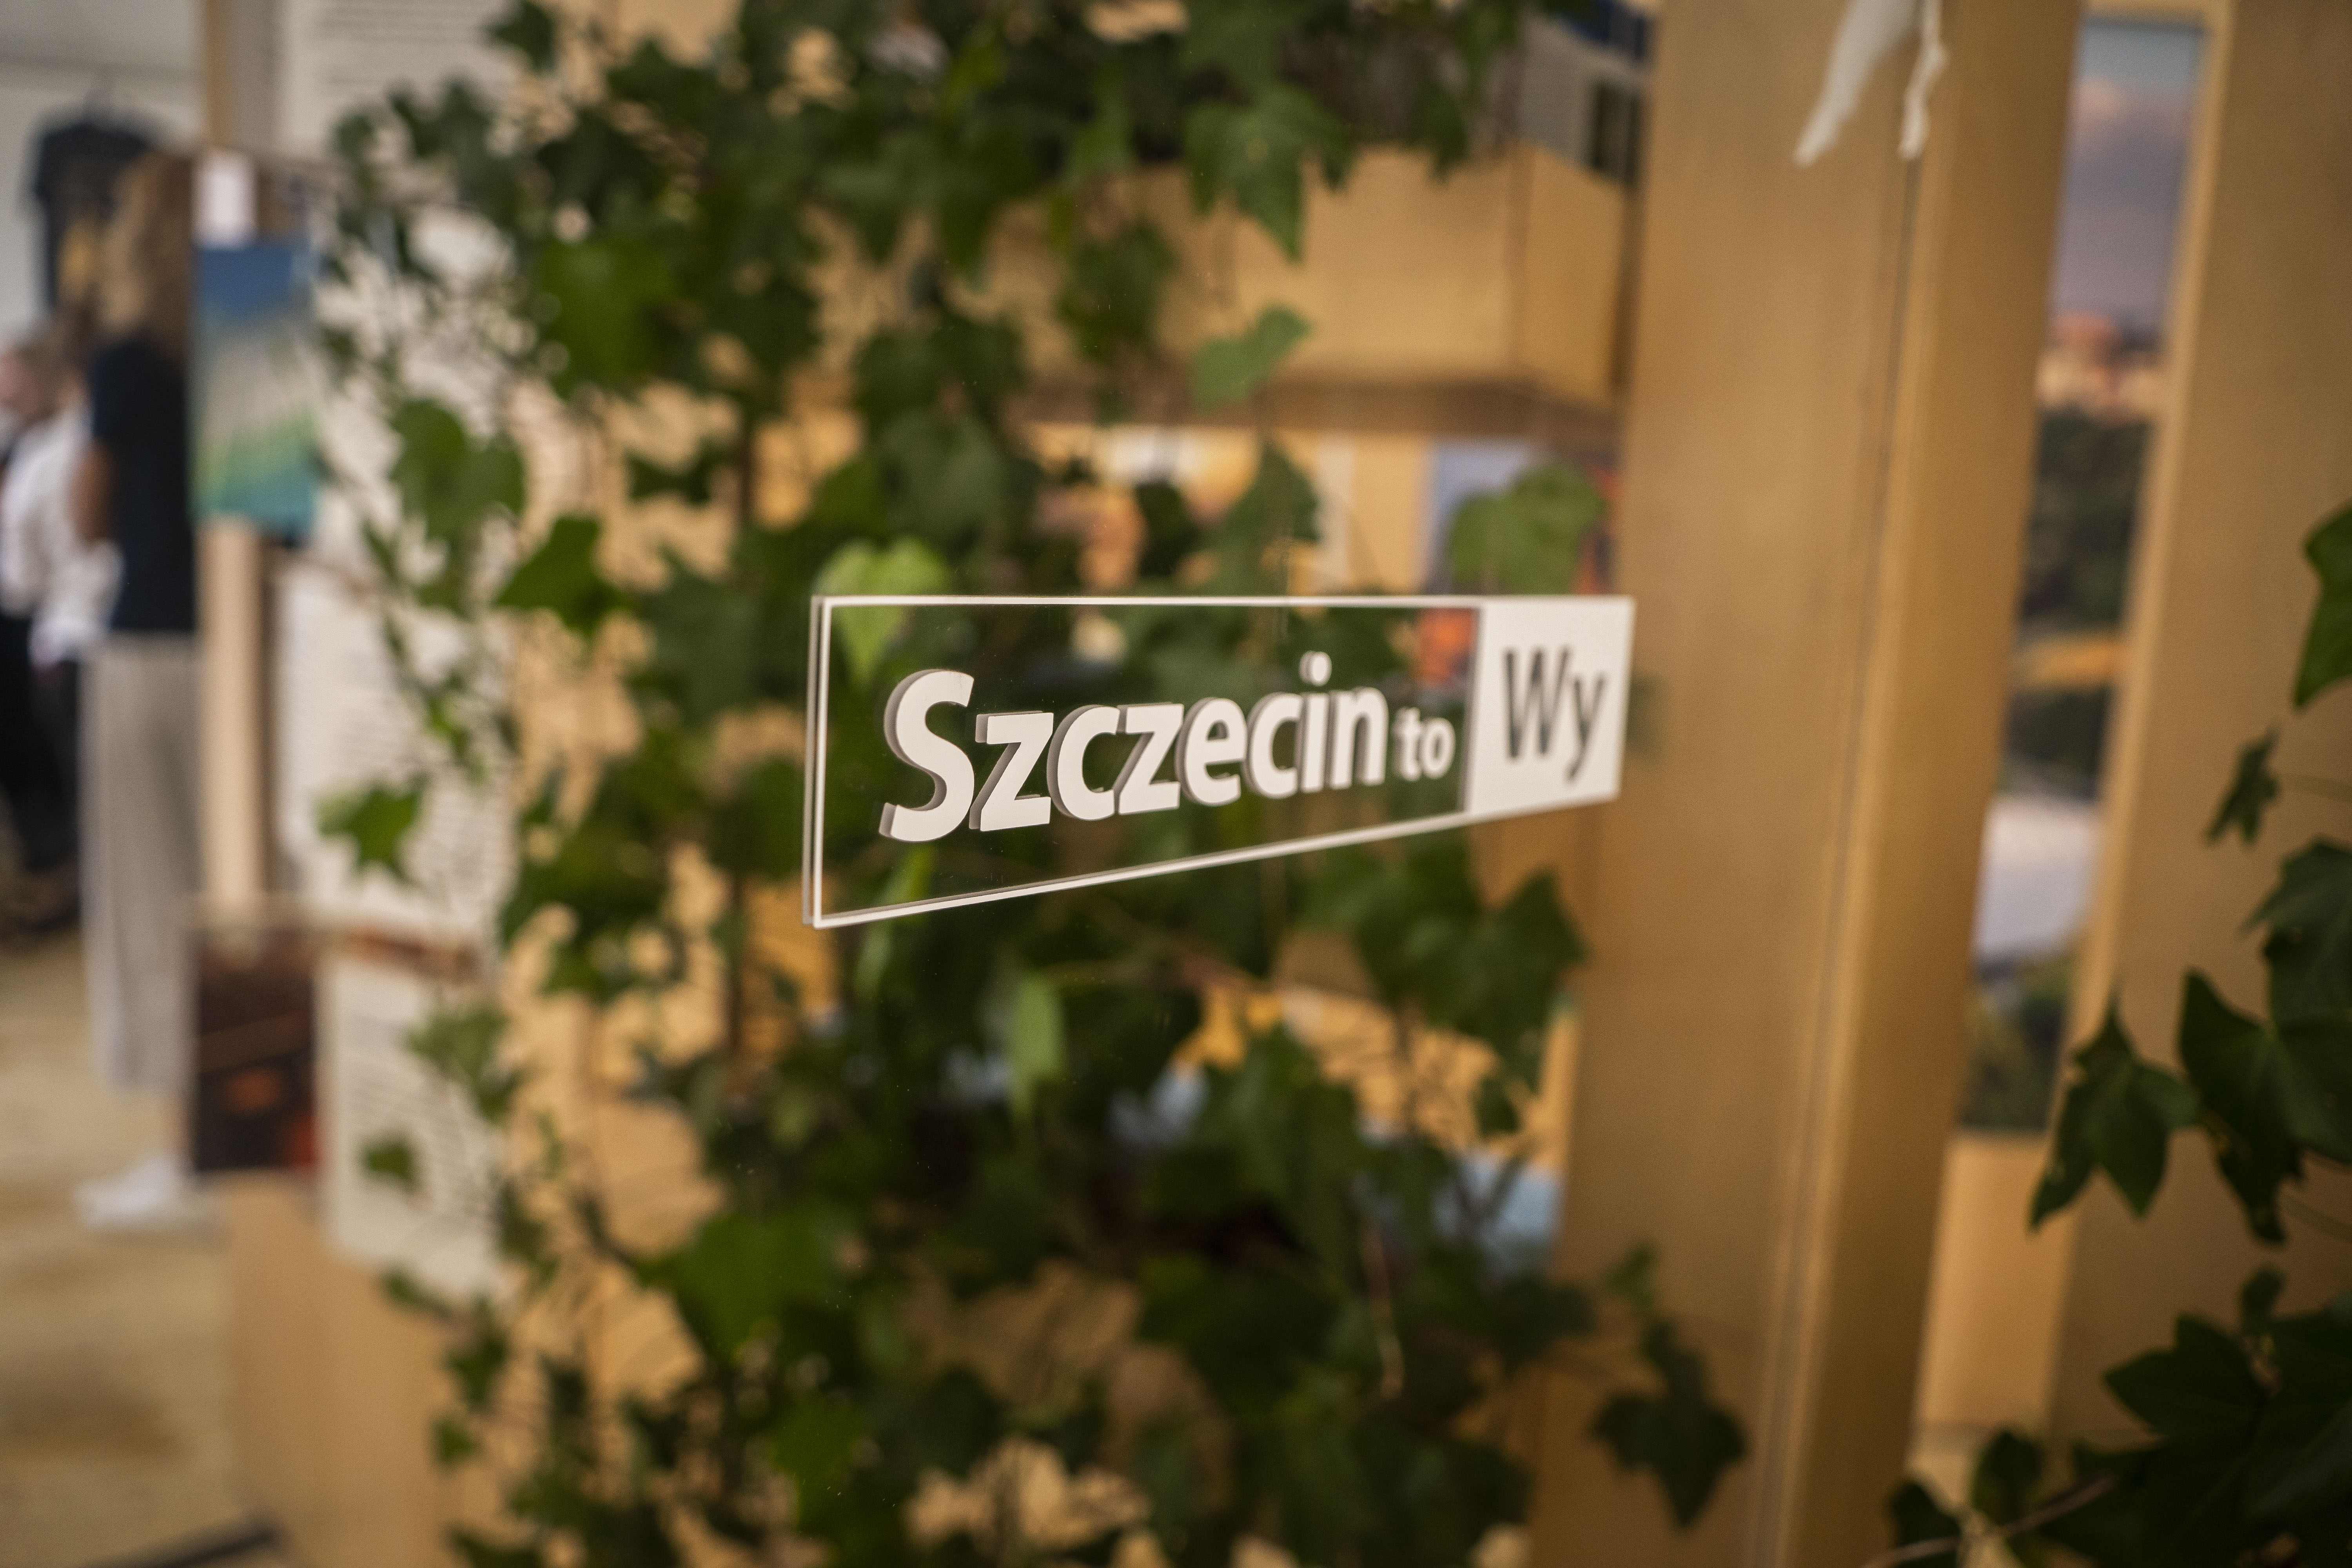 Szczecin to Wy